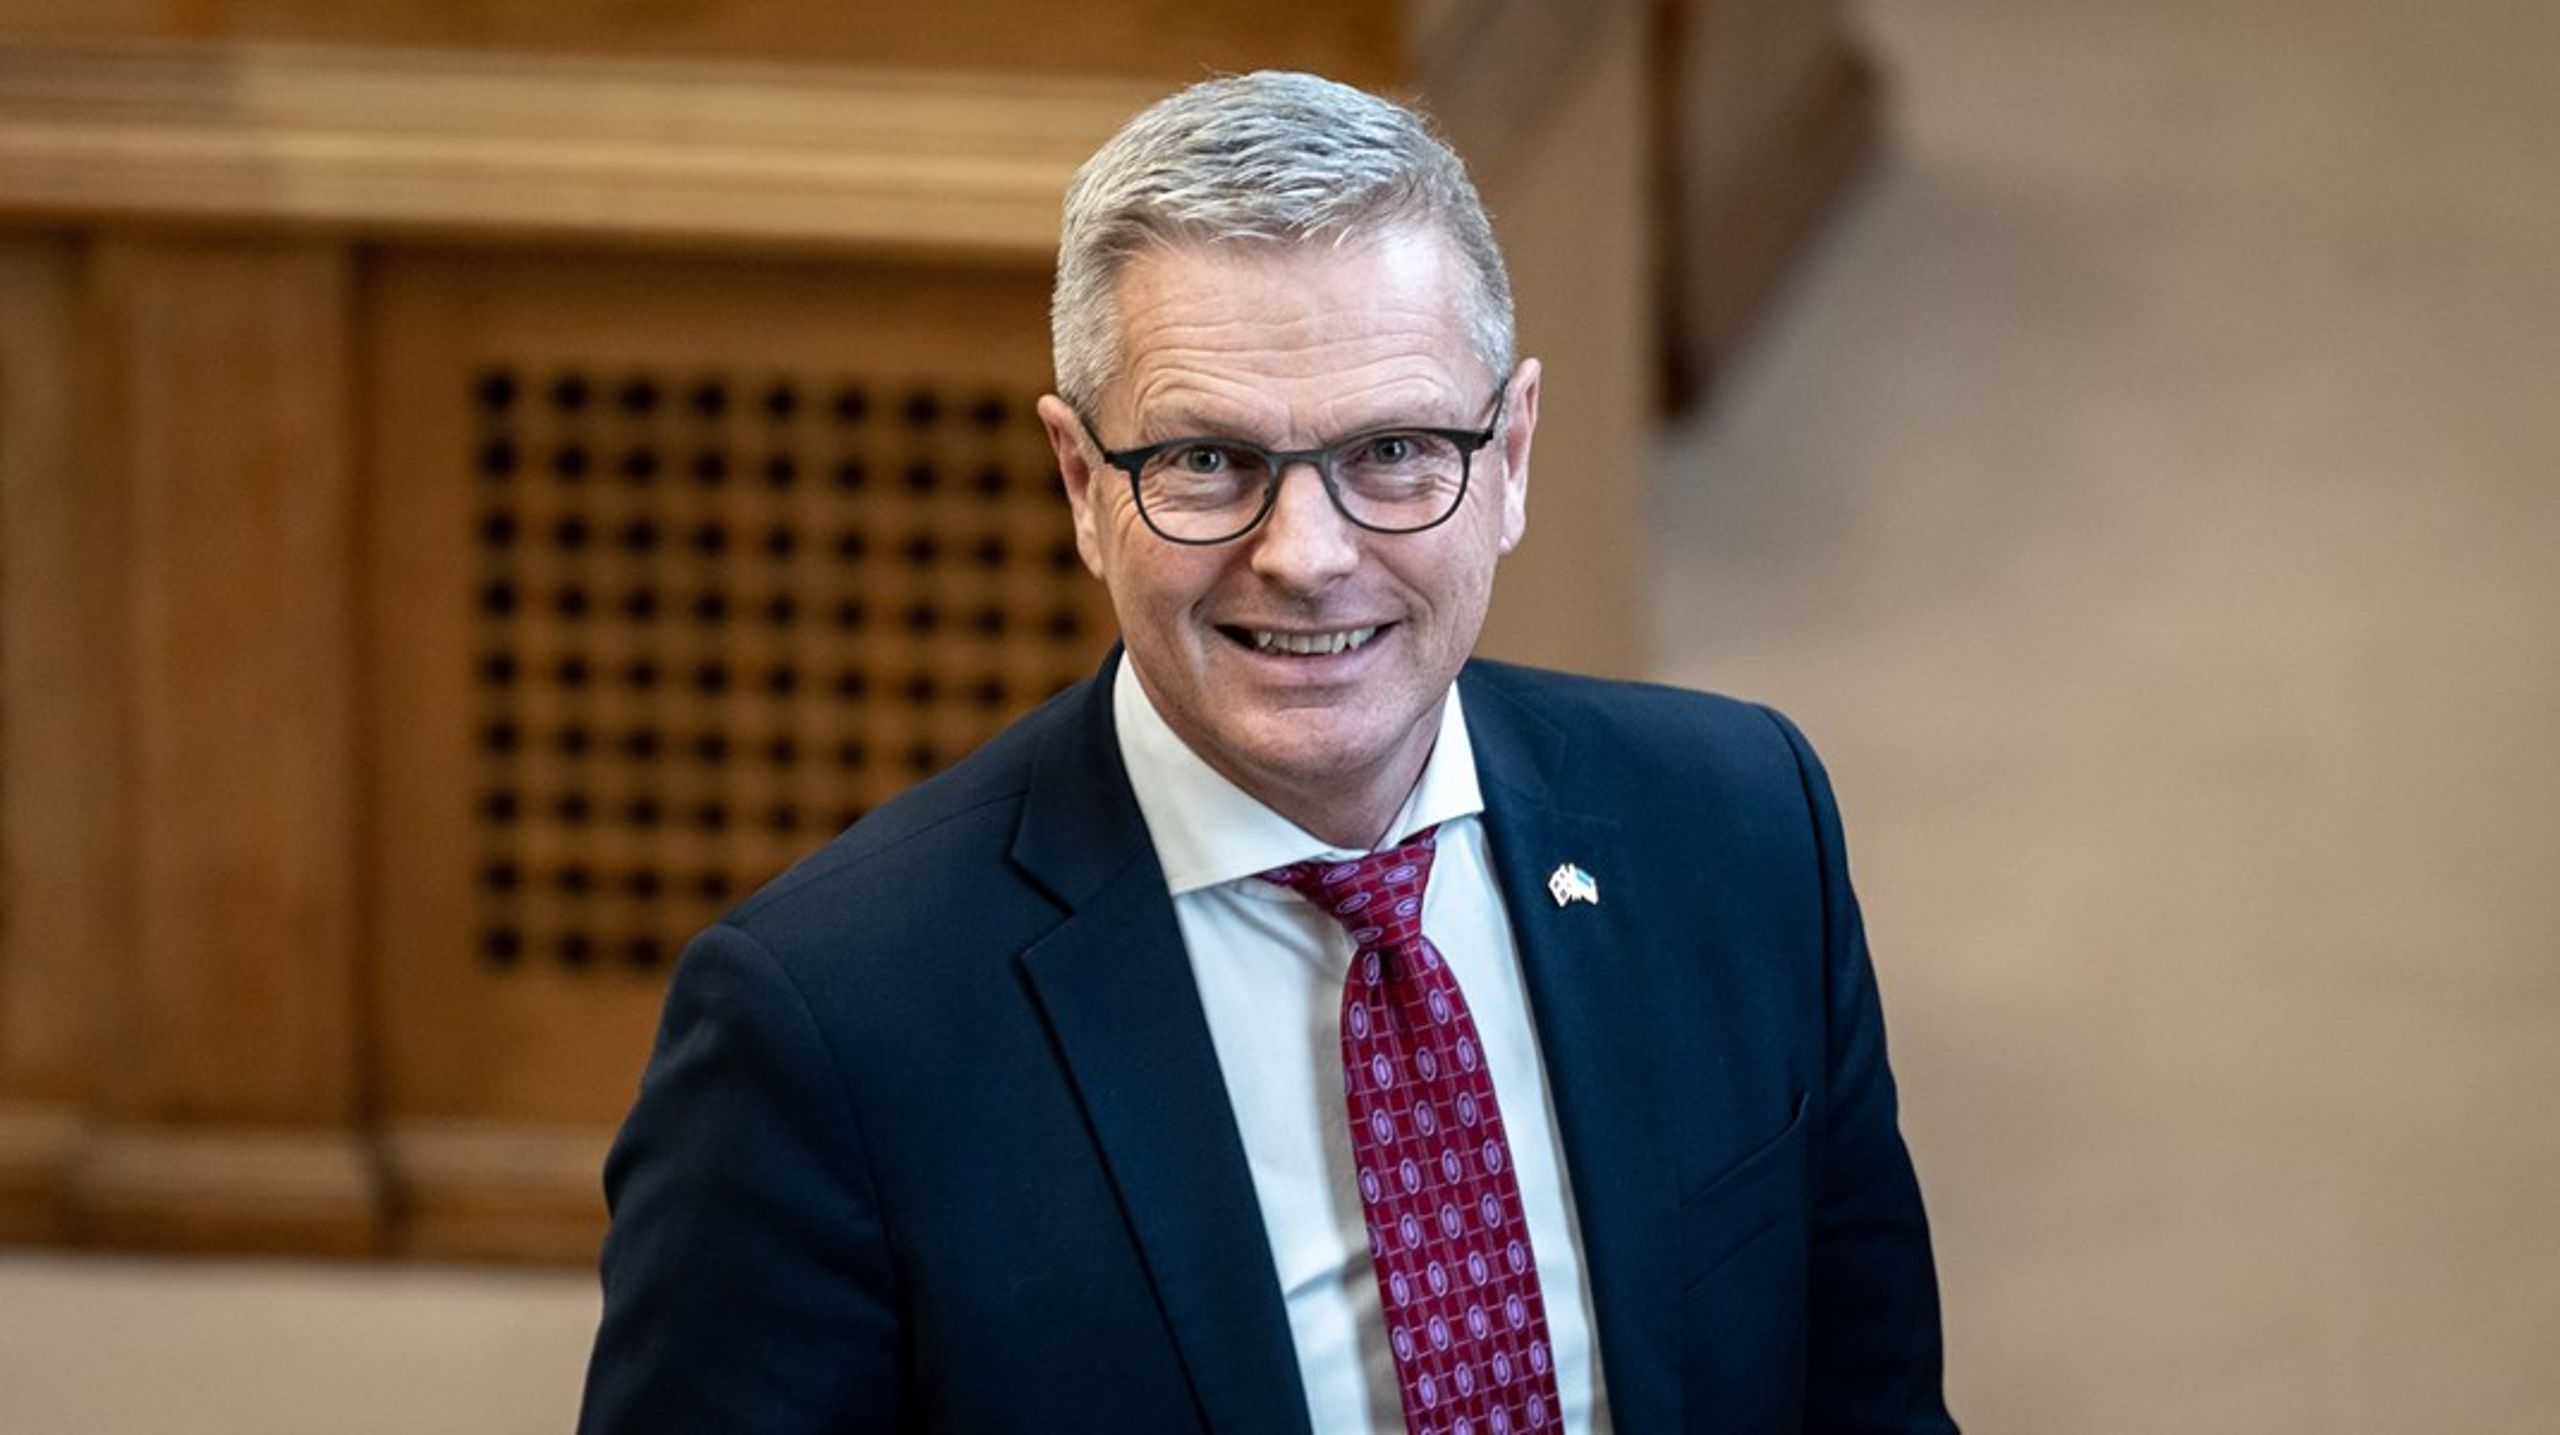 Forhenværende minister for&nbsp;for udviklingssamarbejde og minister for nordisk samarbejde, Flemming Møller Mortensen, er blandt de tre kandidater, der indtil videre har meldt sig som kandidat til borgmesterposten i Aalborg.